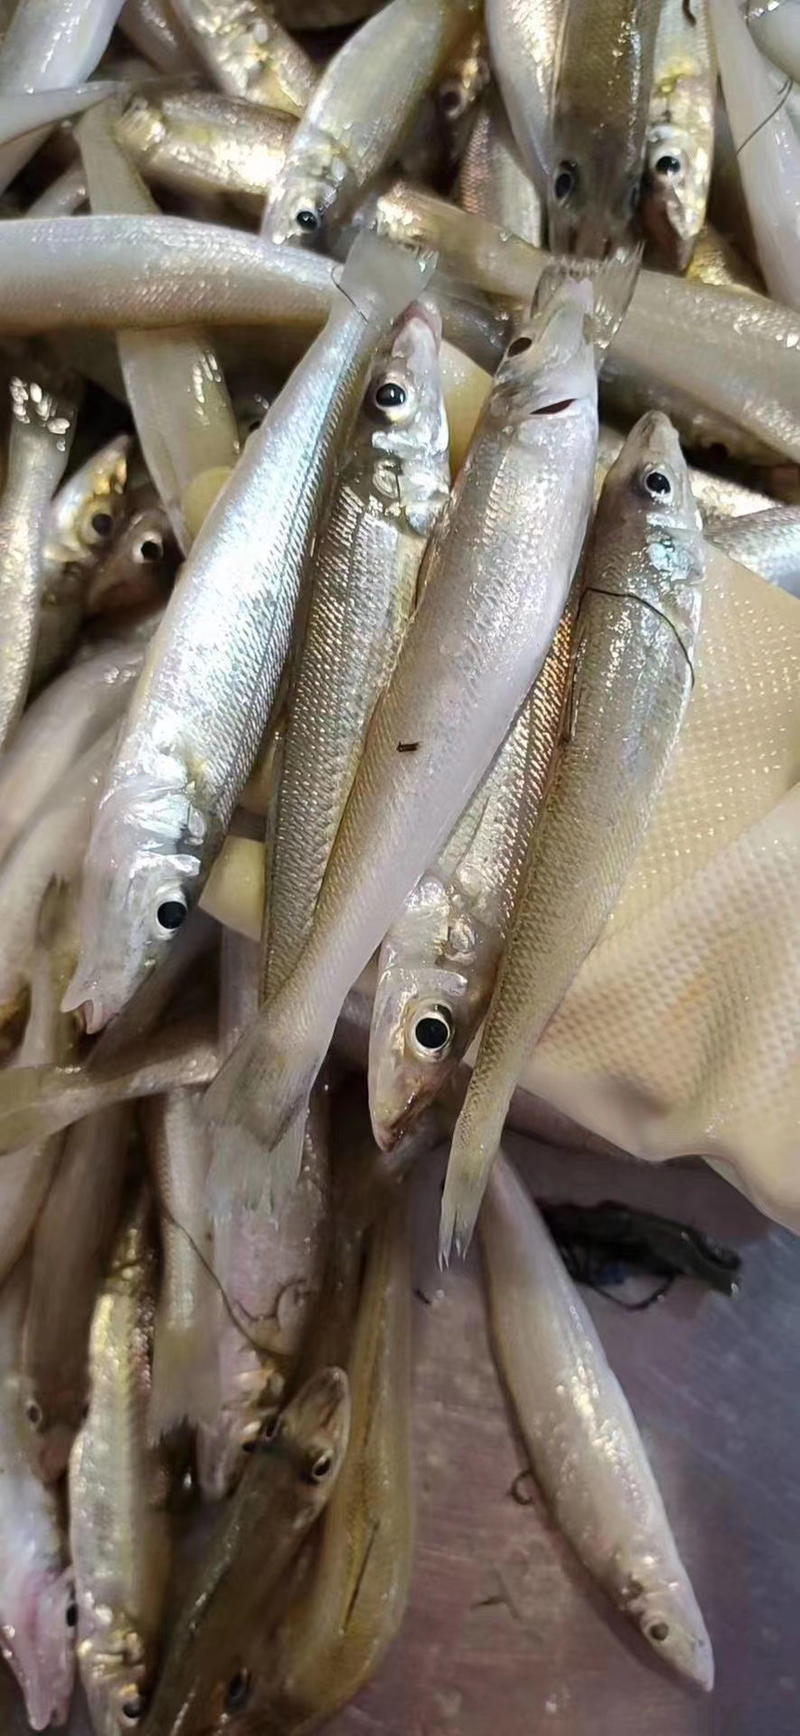 沙尖鱼沙丁鱼金鳞鱼梭子鱼鲜活海鲜水产浅海生鲜